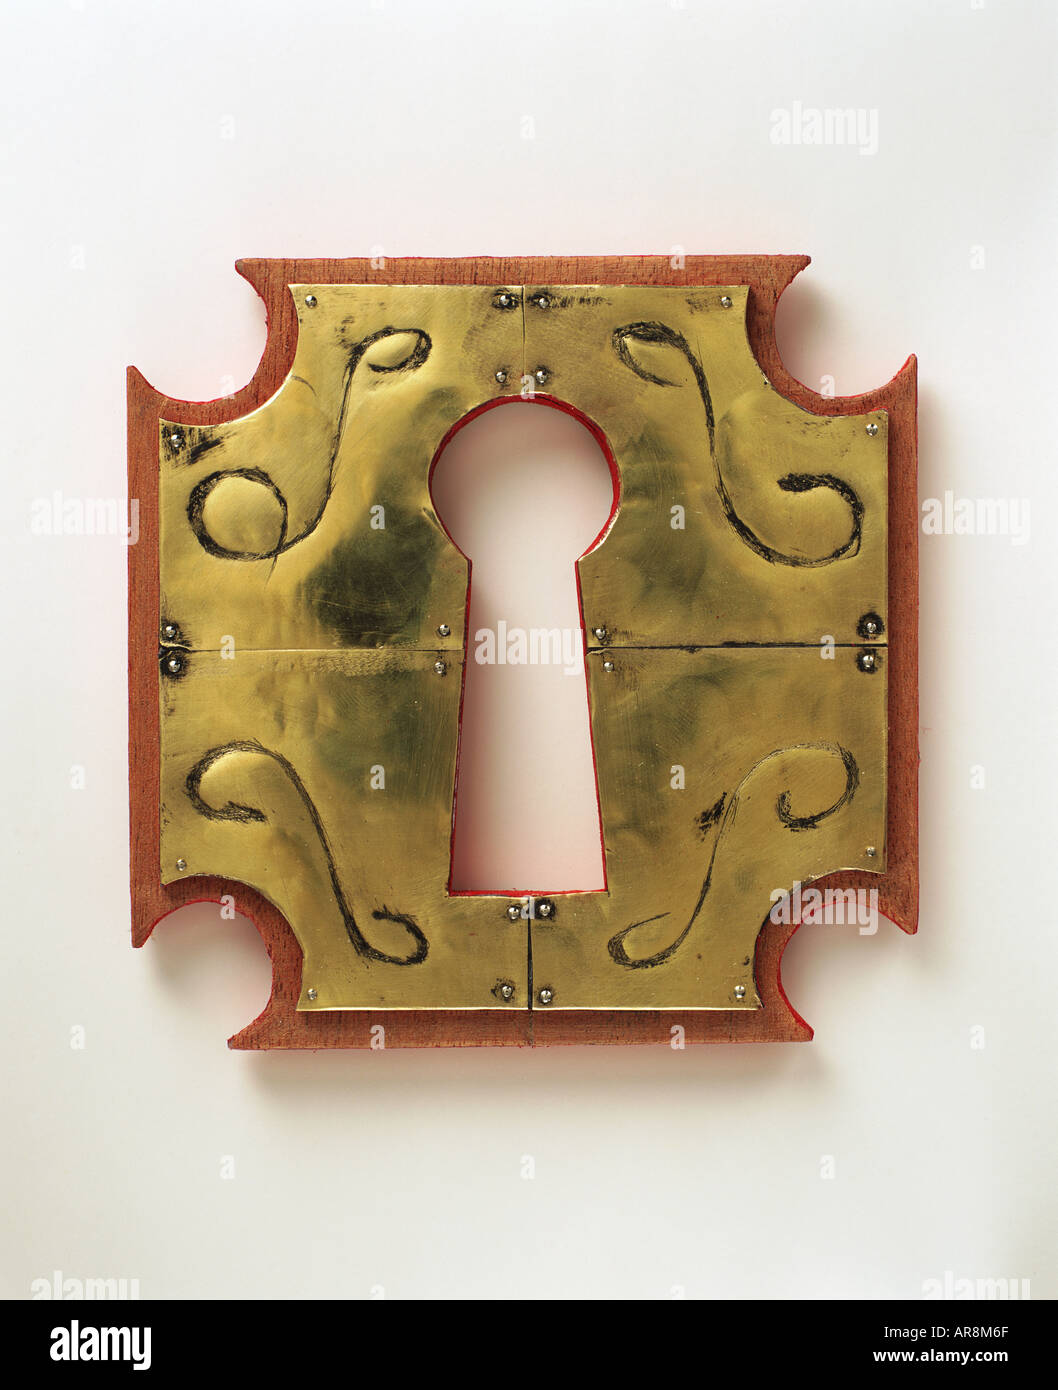 Dorare croce di ferro metallo toppa, circondato da piastre di ottone cuscinetto decorativo simboli incisi, bordatura in legno. Foto Stock